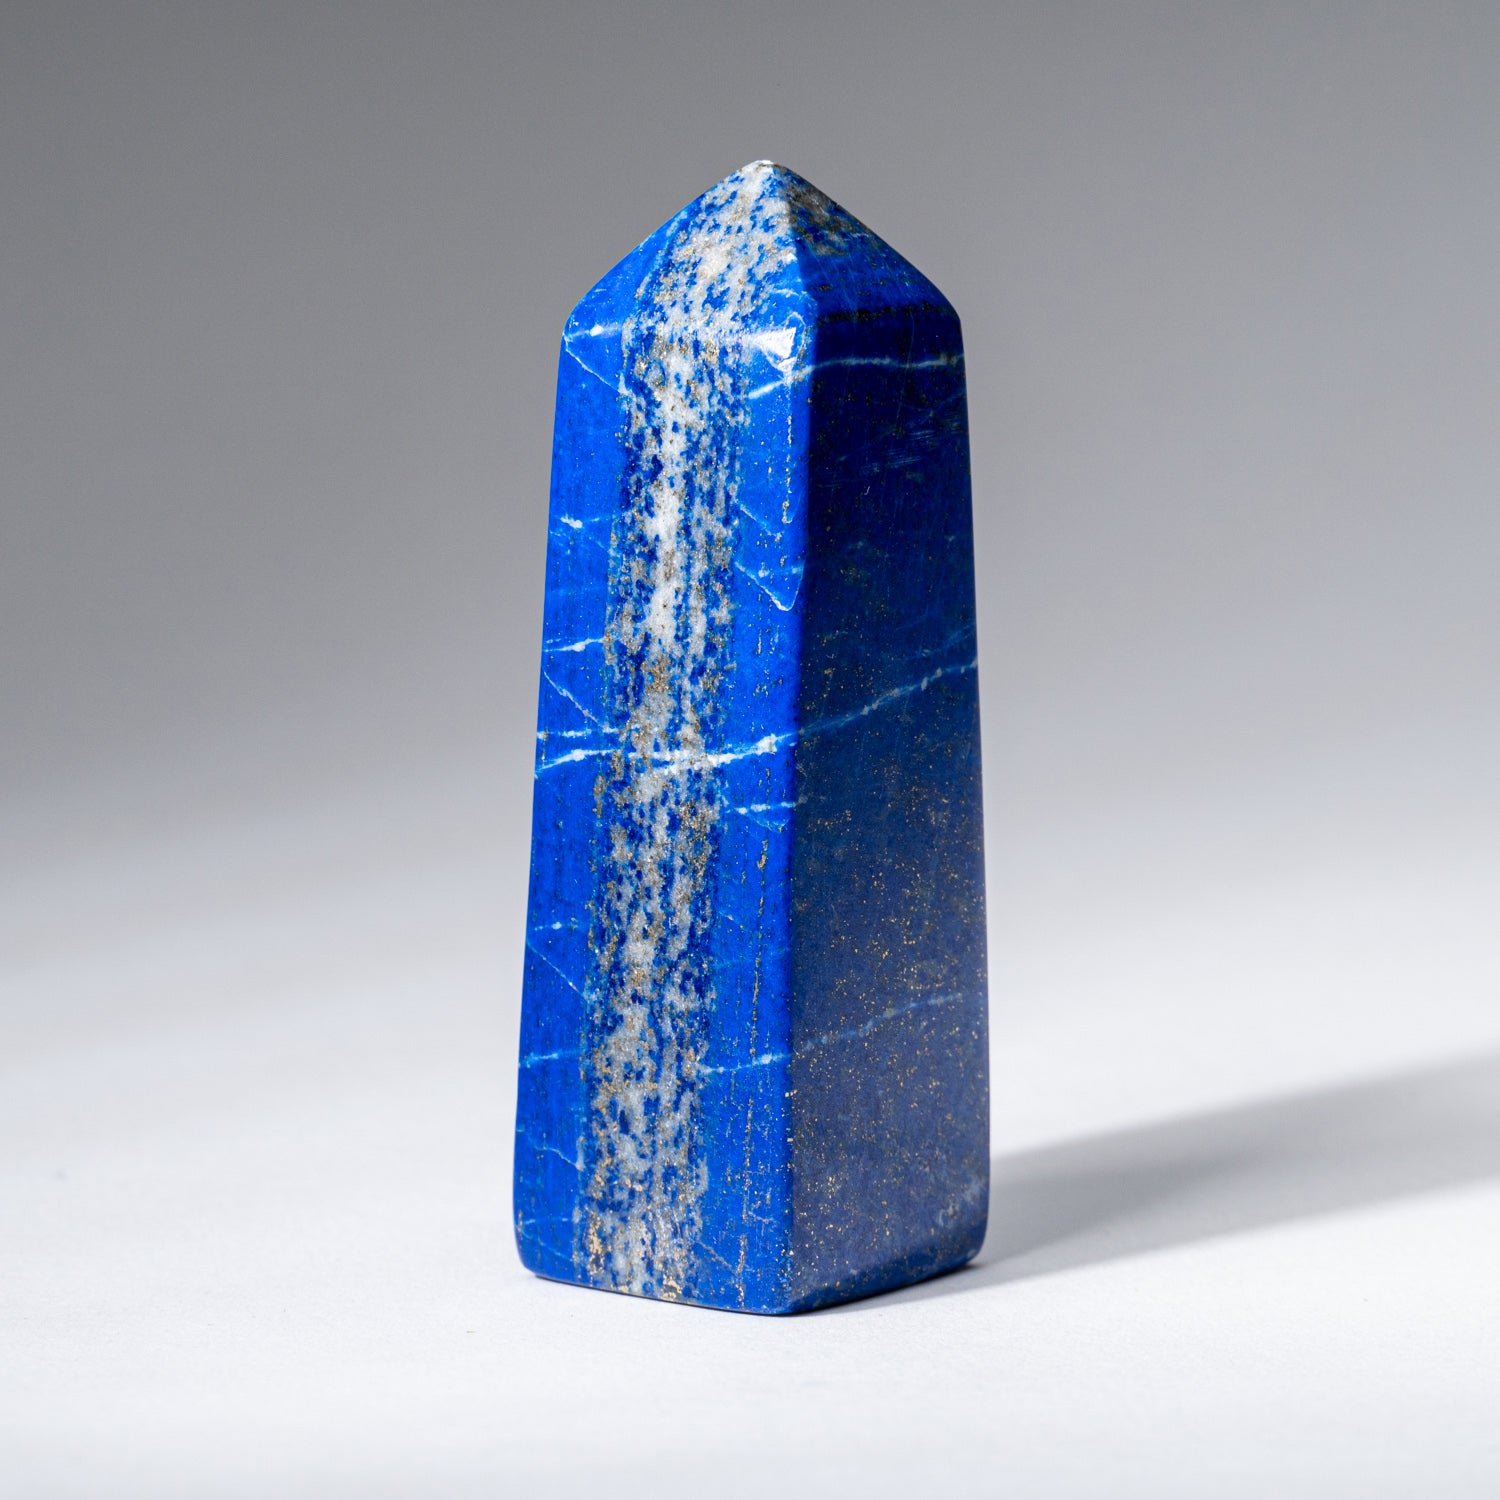 Polished Lapis Lazuli Obelisk from Afghanistan (110.7 grams)